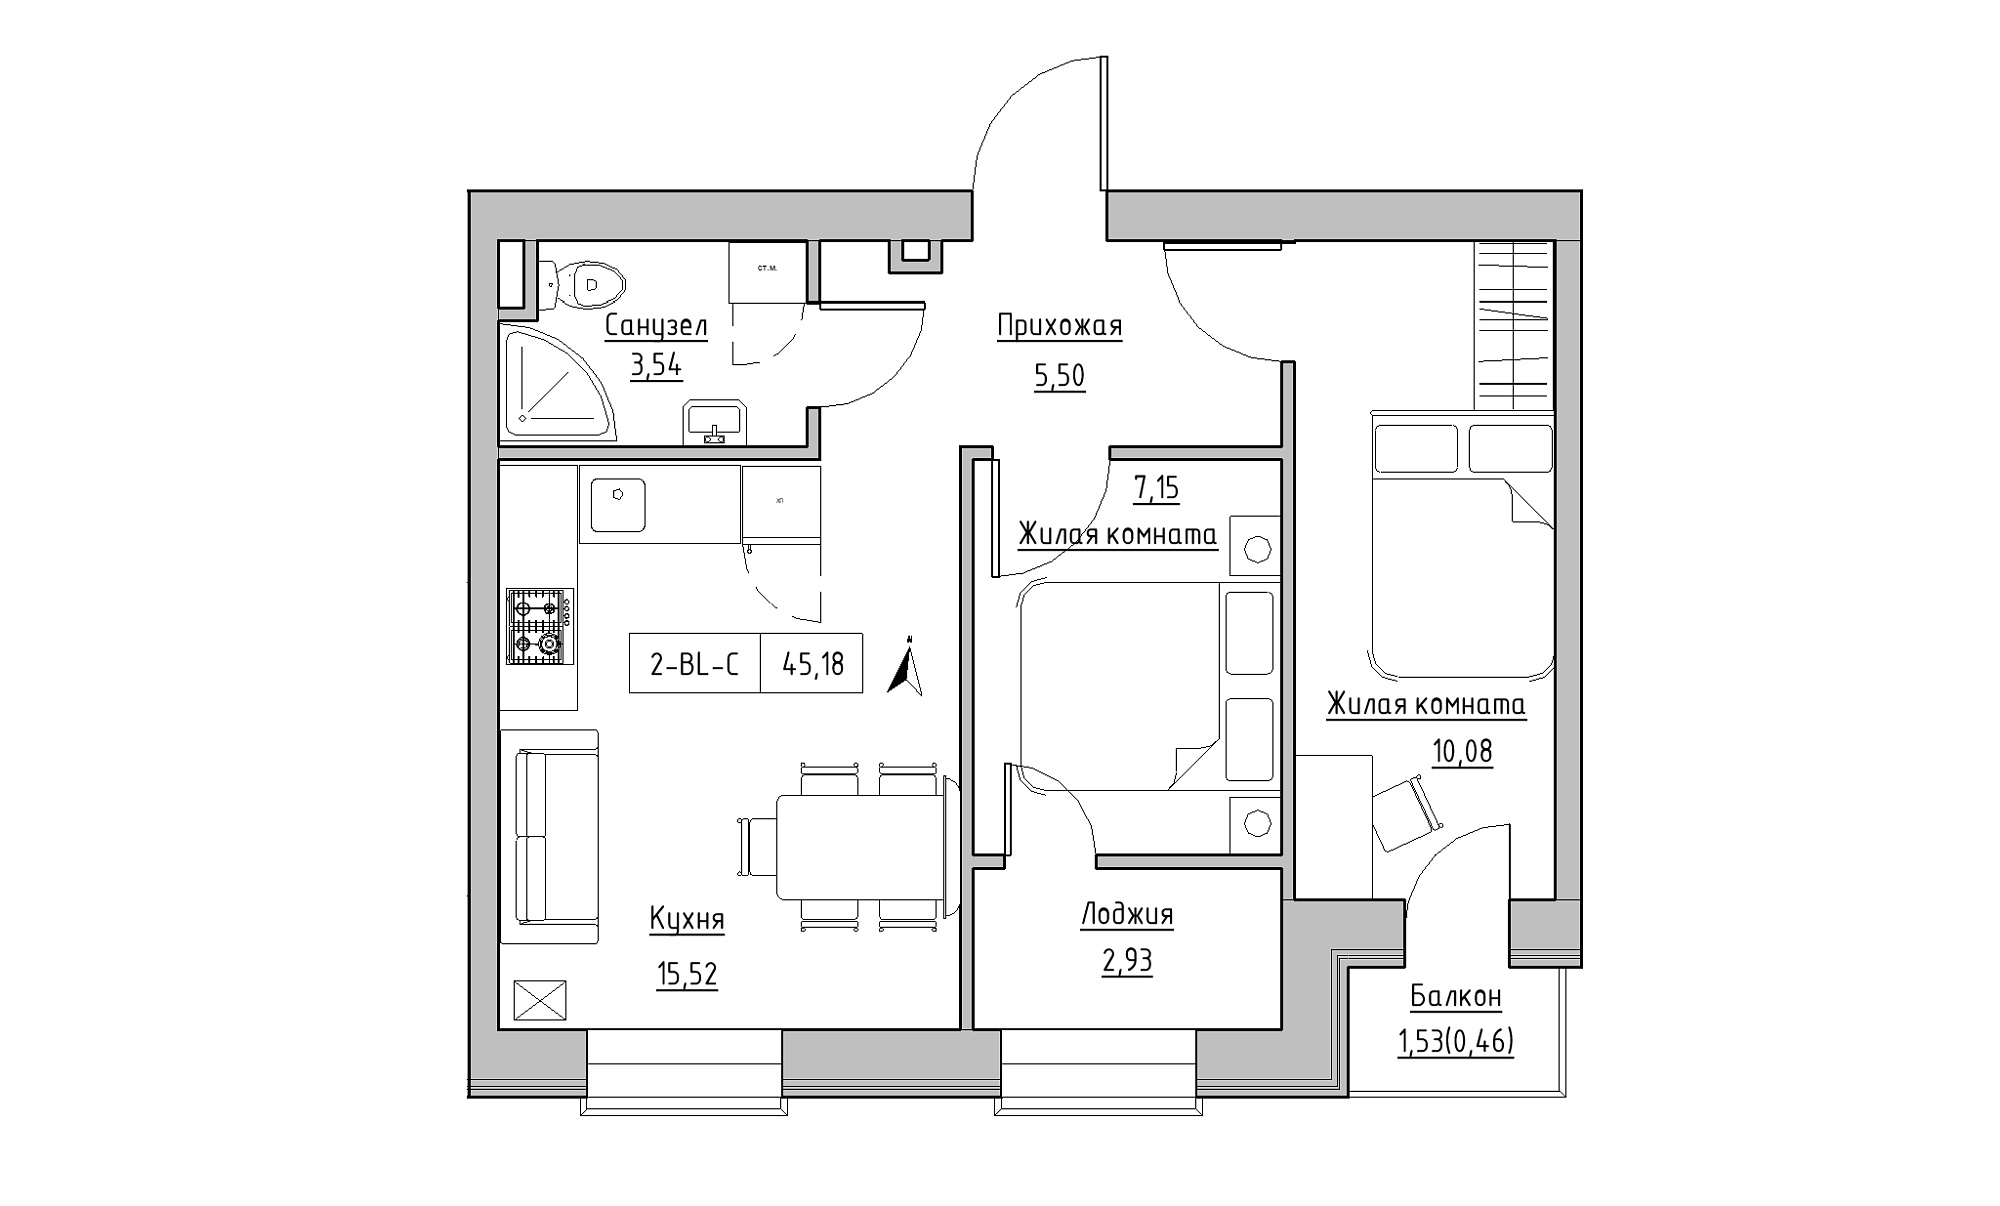 Планування 2-к квартира площею 45.18м2, KS-023-03/0009.